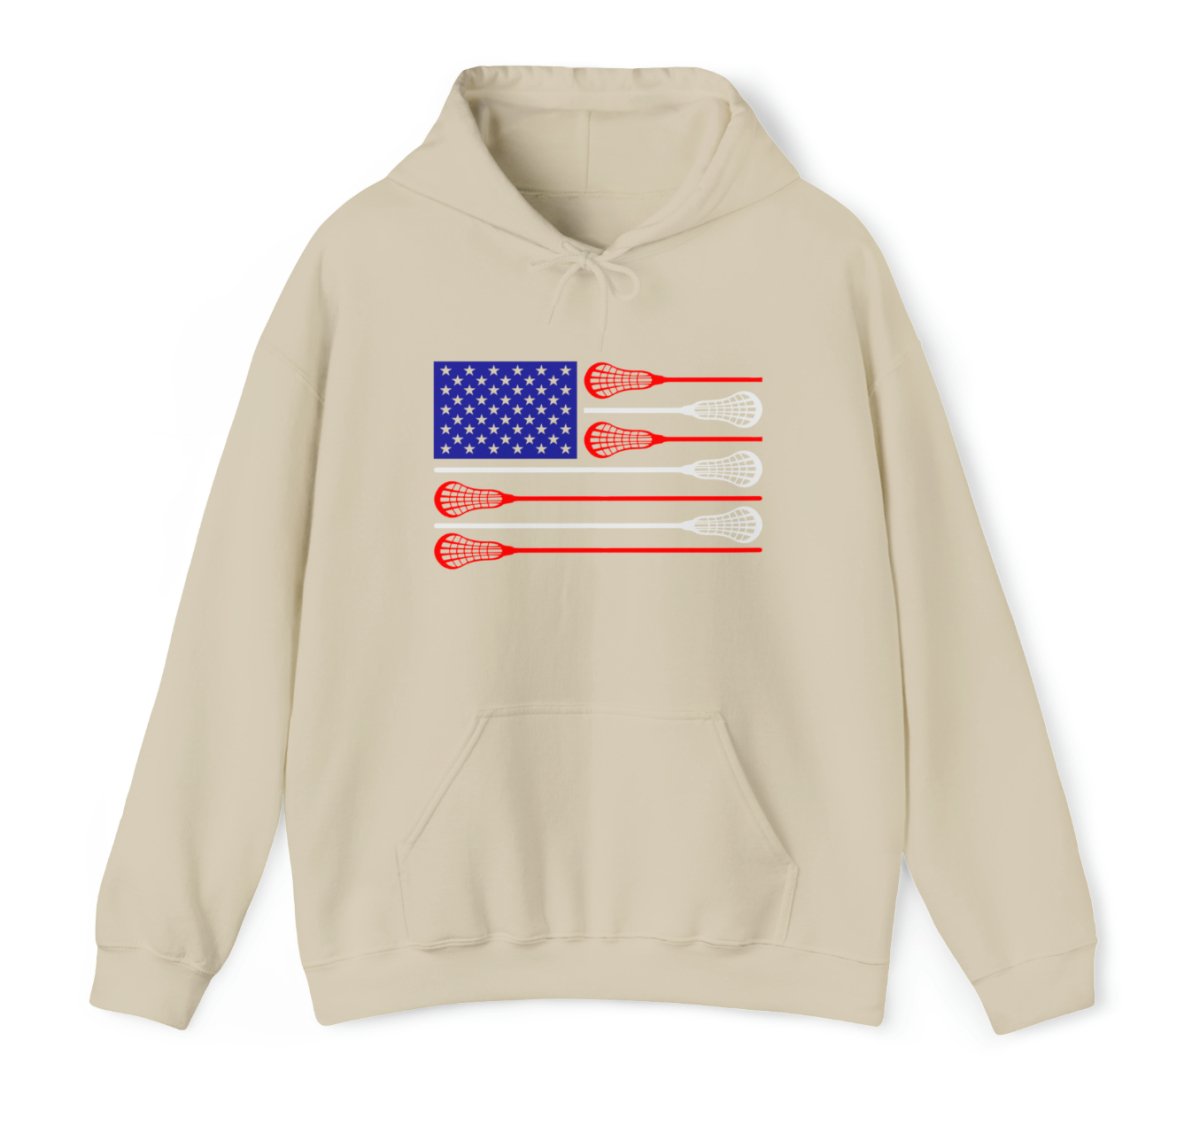 USA Flag Lax Hoodie - The Luua Company